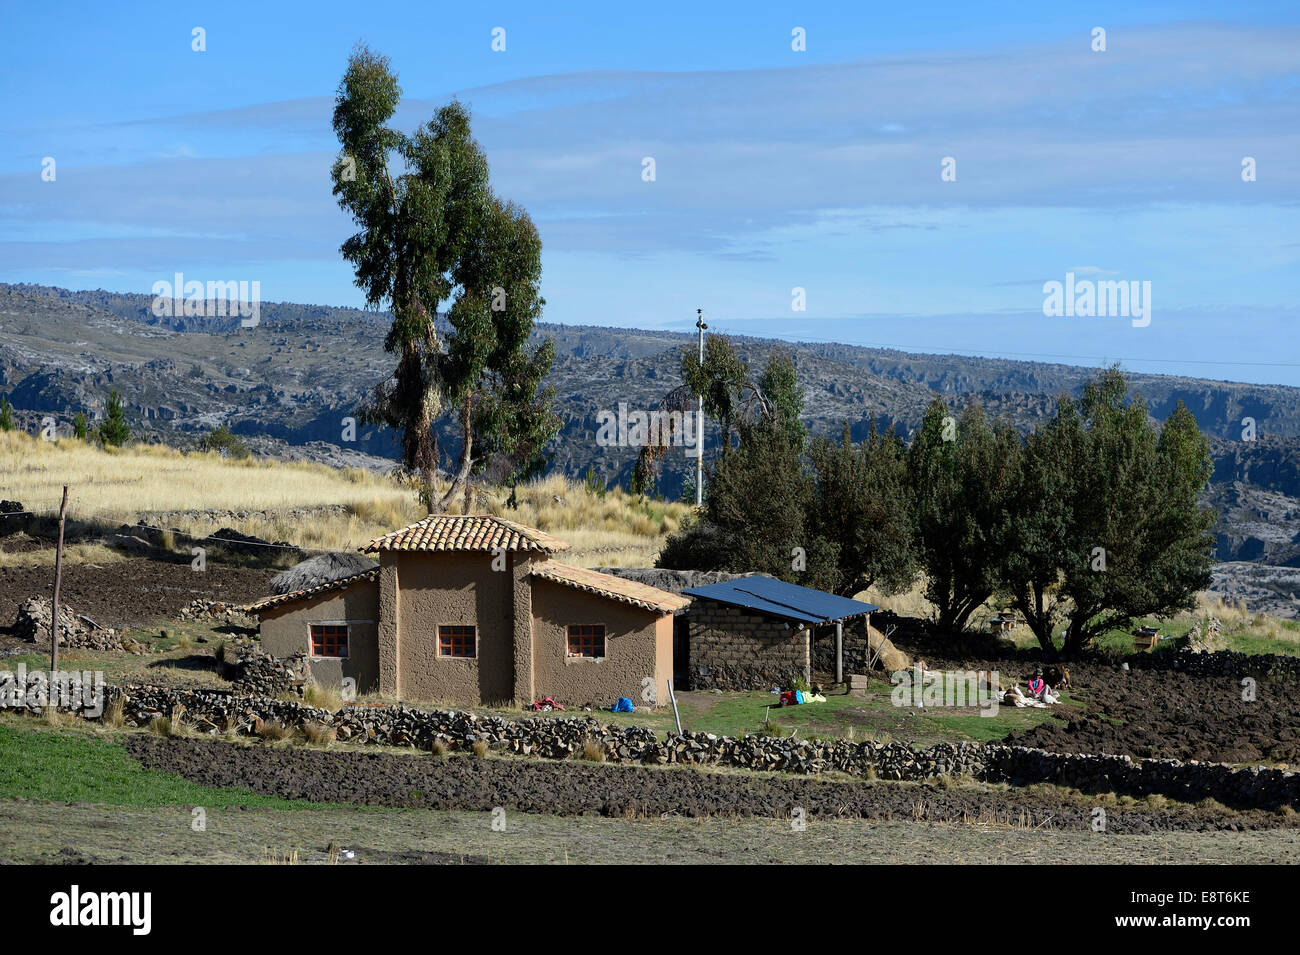 Maison traditionnelle d'adobe en briques de boue, Quispillacta, Ayacucho, au Pérou Banque D'Images